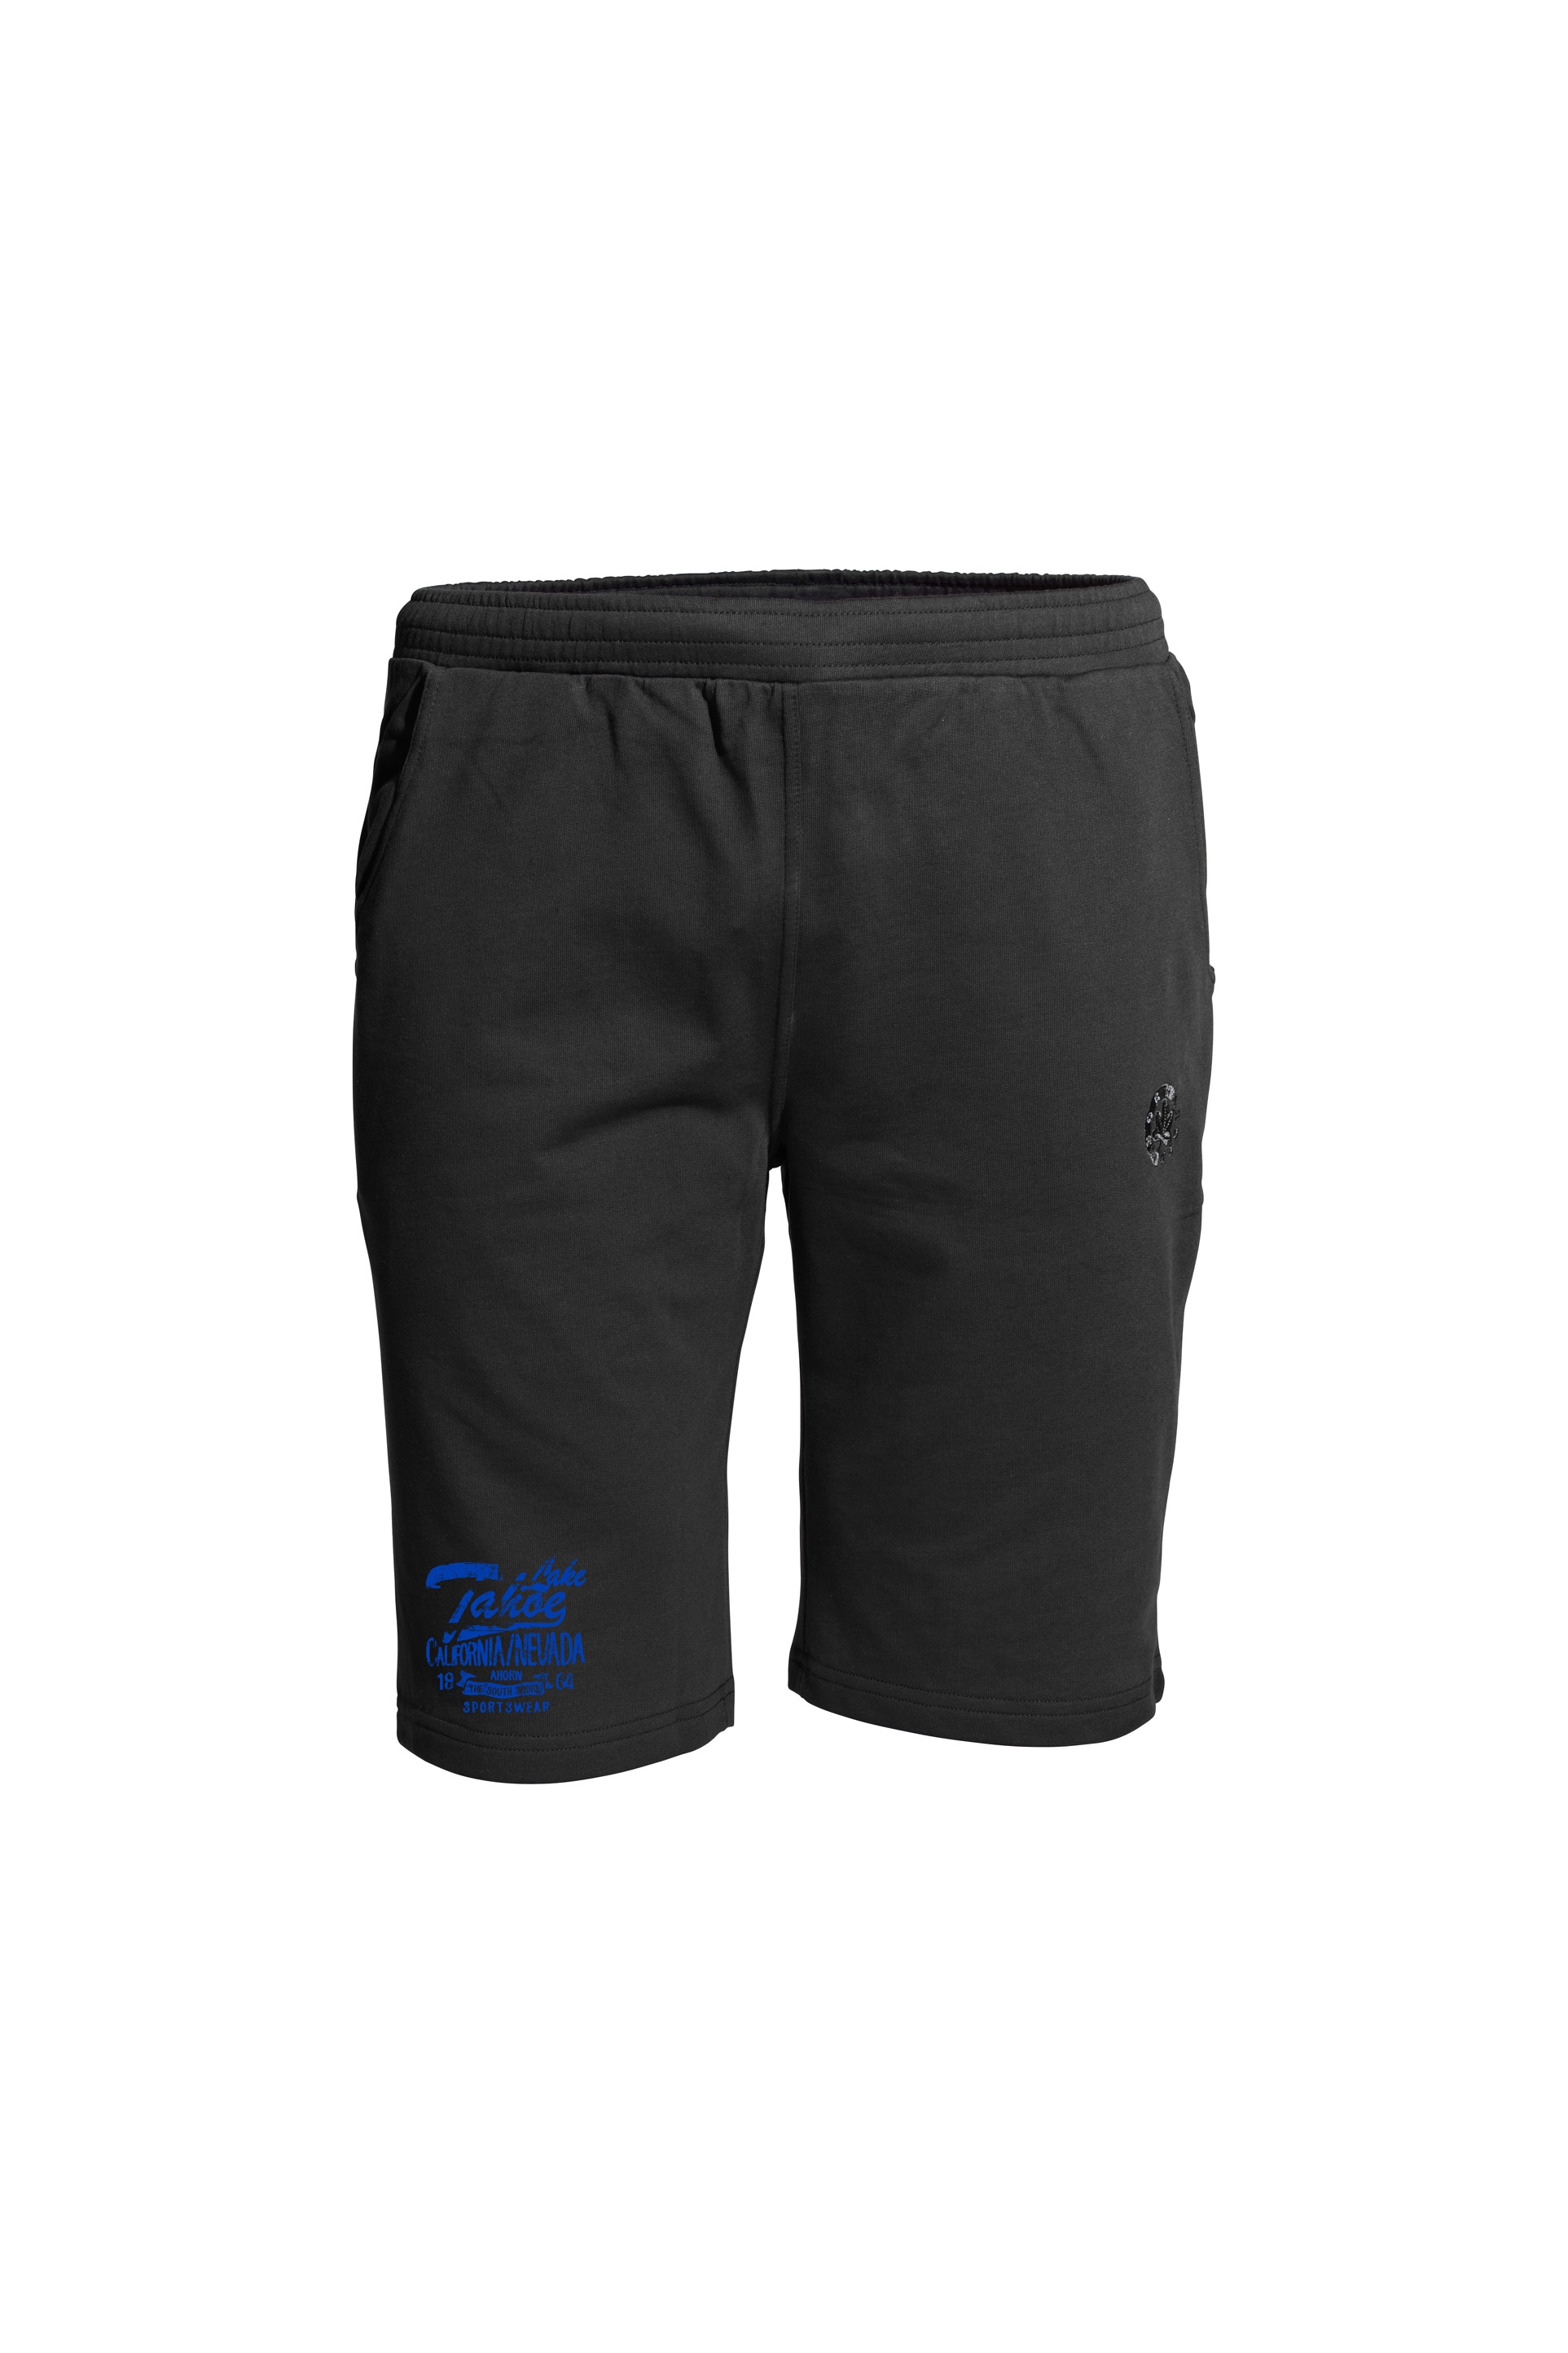 AHORN SPORTSWEAR Shorts »LAKE TAHOE«, mit modischem Print am Bein